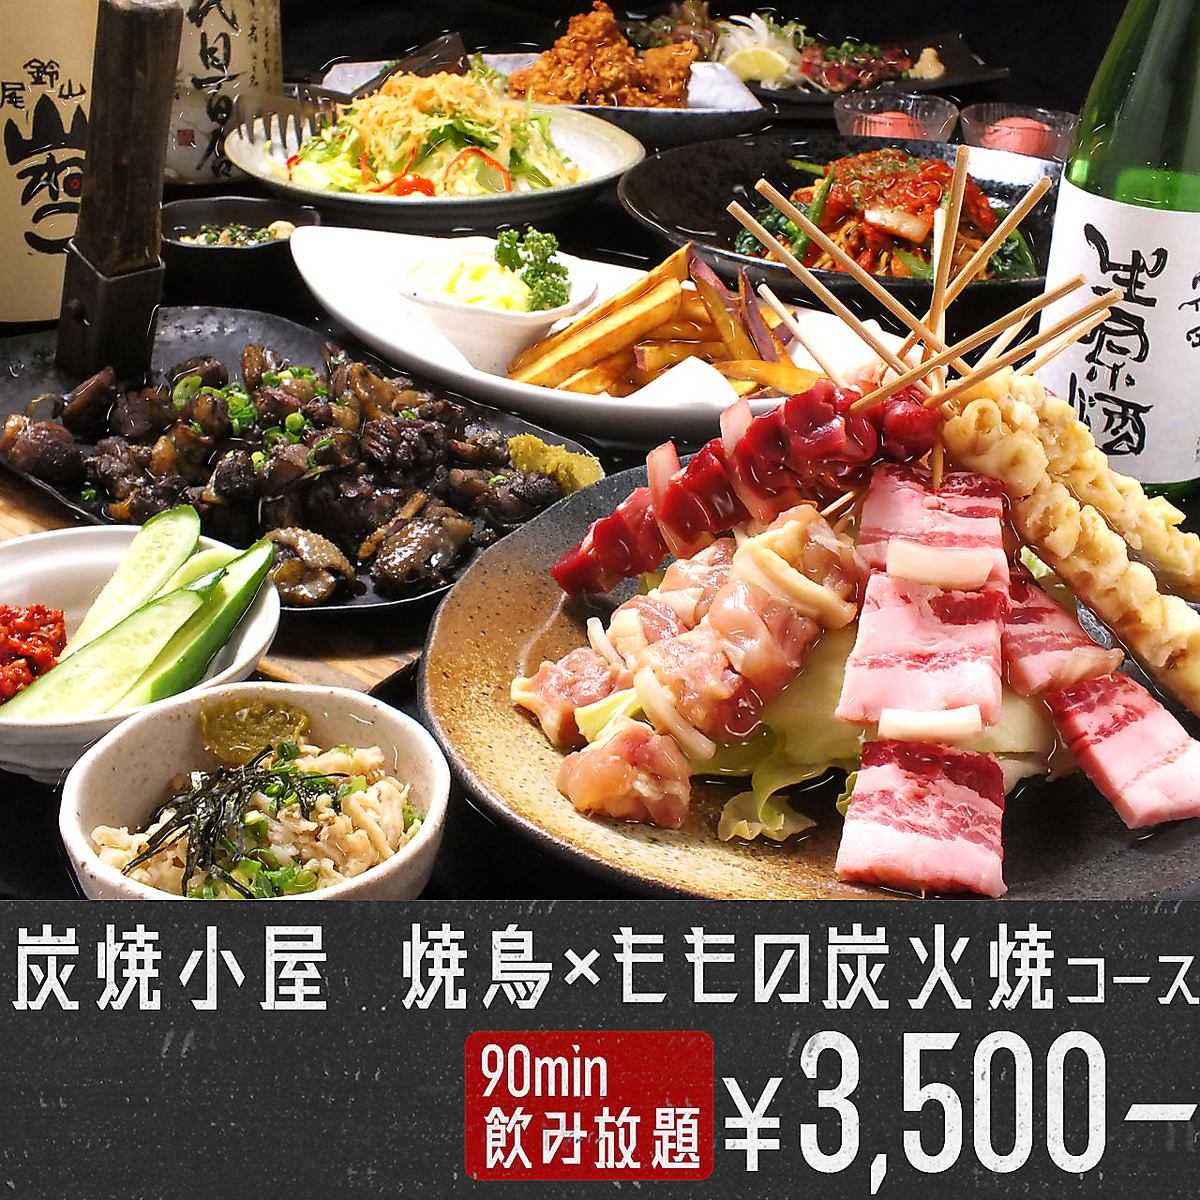 太美味了！3,500日元的套餐包含著名的炭烤大腿，并包含90分钟的无限畅饮！